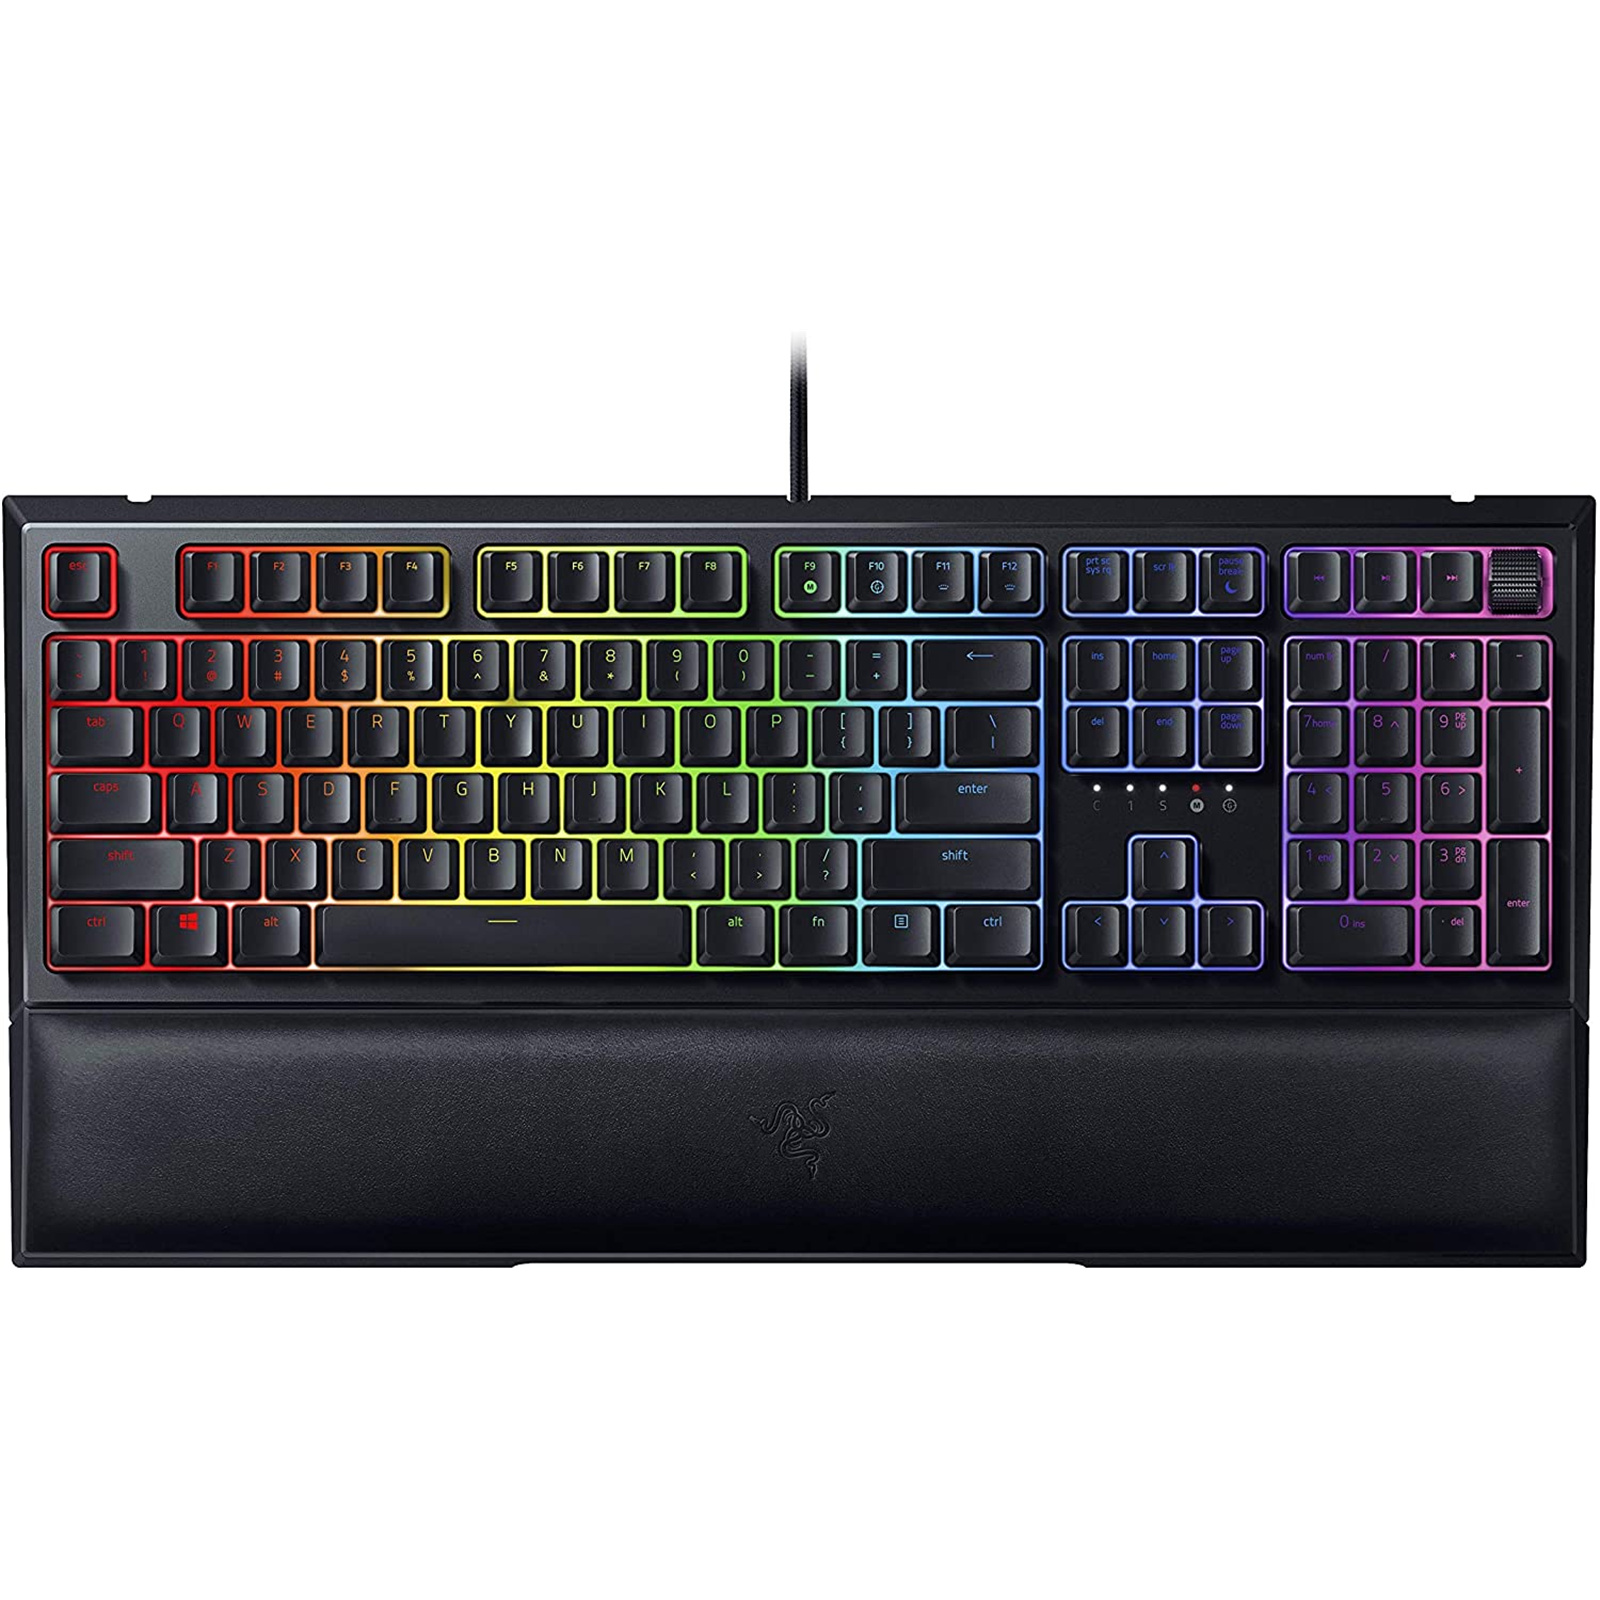 Buy the Razer Ornata V2 Chroma RGB Gaming Keyboard Mecha-Membrane Keys -...  ( RZ03-03380100-R3M1 ) online - PBTech.com/pacific